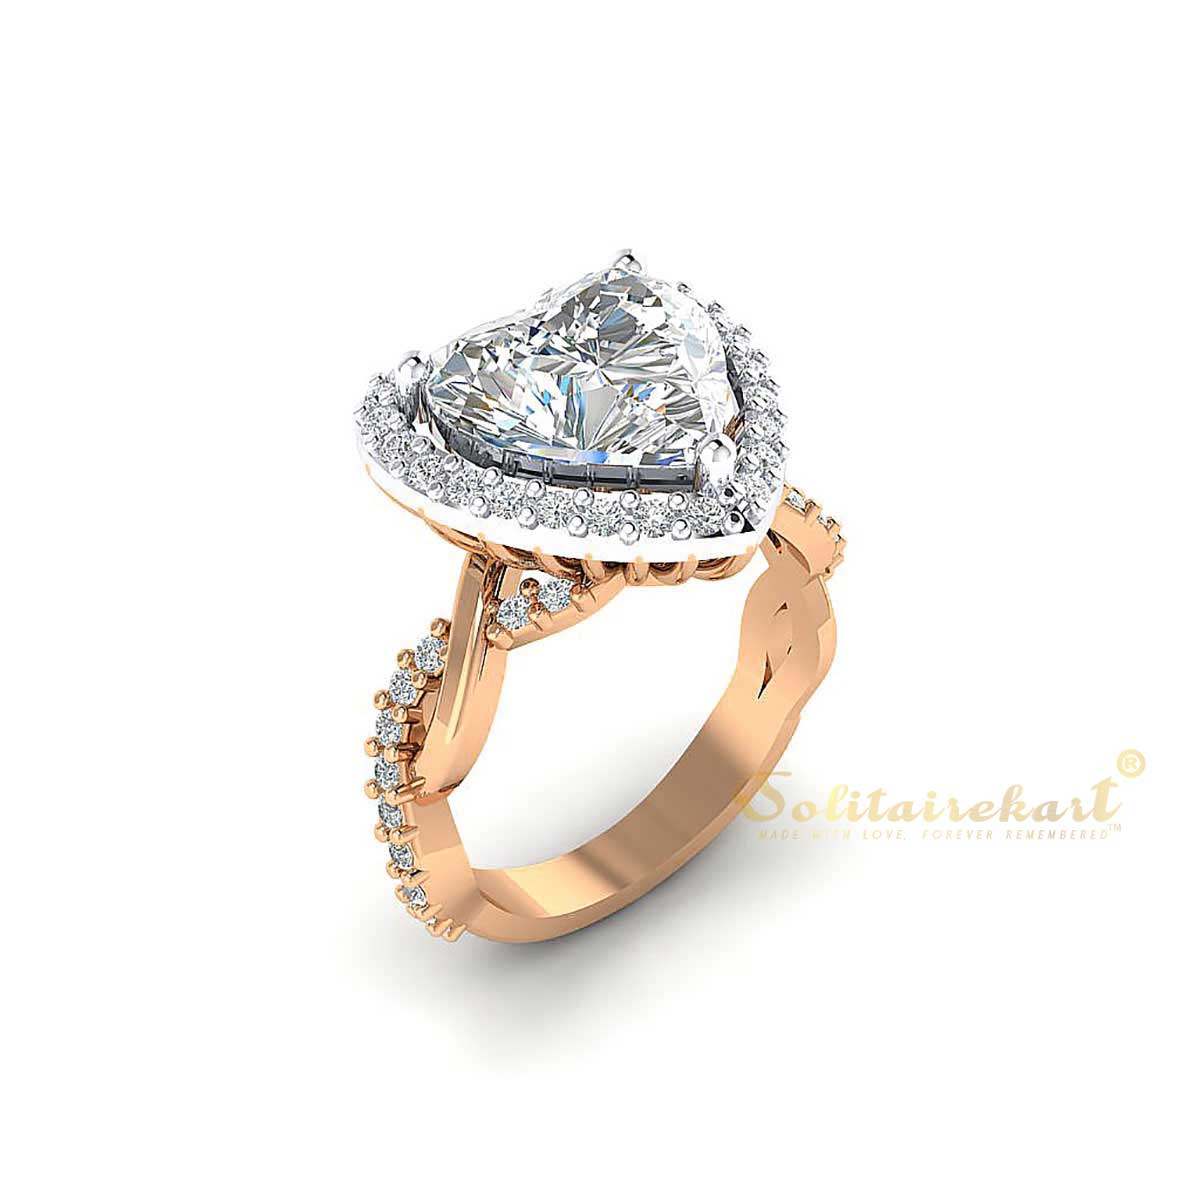 Sloane-Sideways Pear Shape Diamond Ring